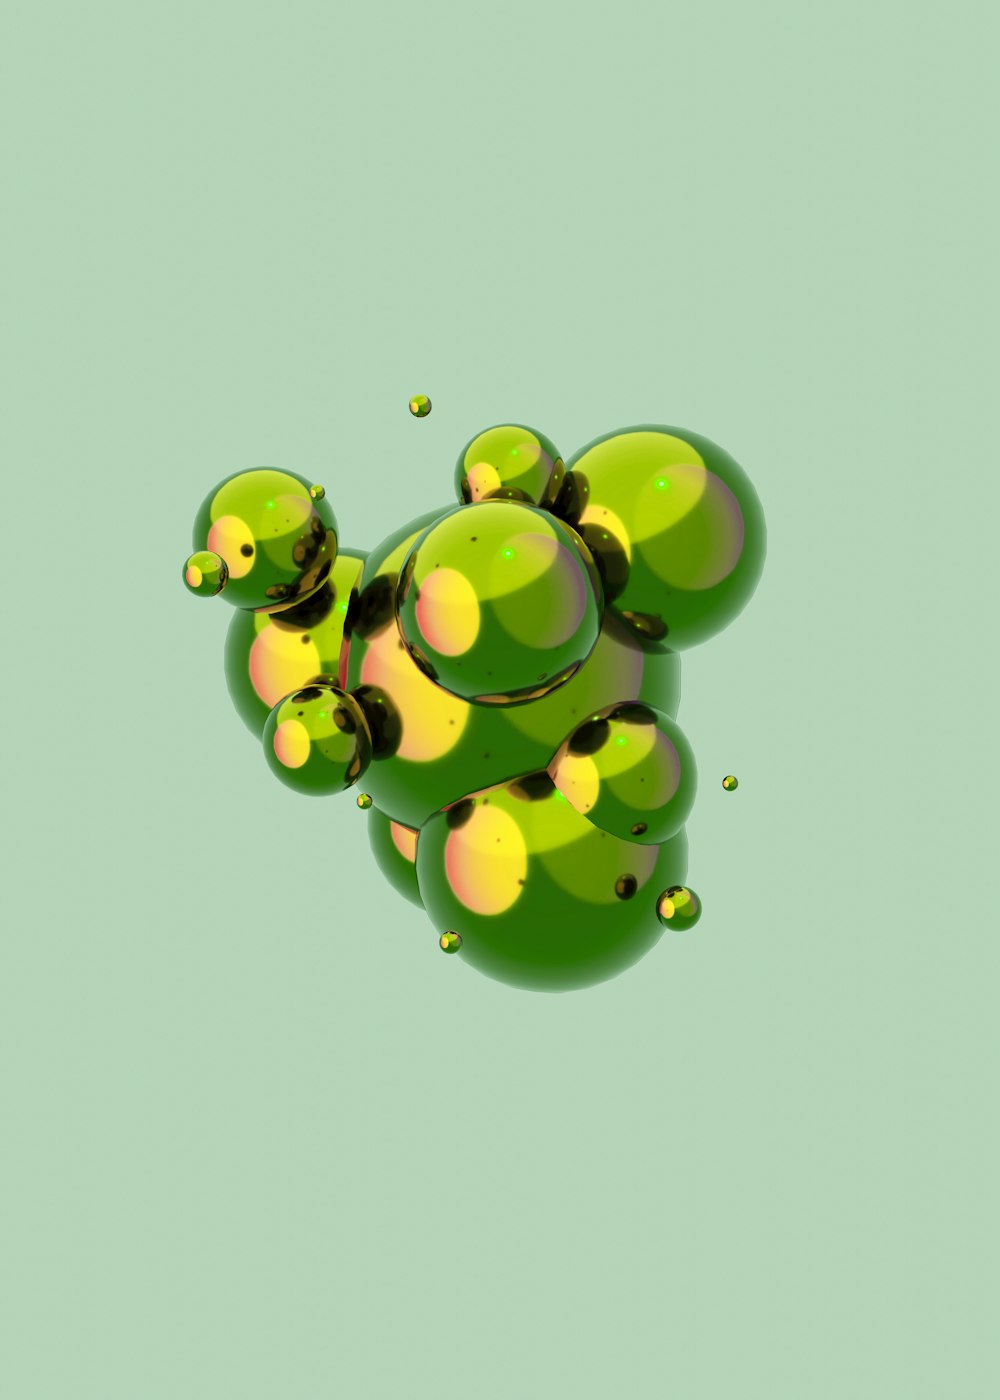 Imágenes de Mint Green Aesthetic | Descarga imágenes gratuitas en Unsplash